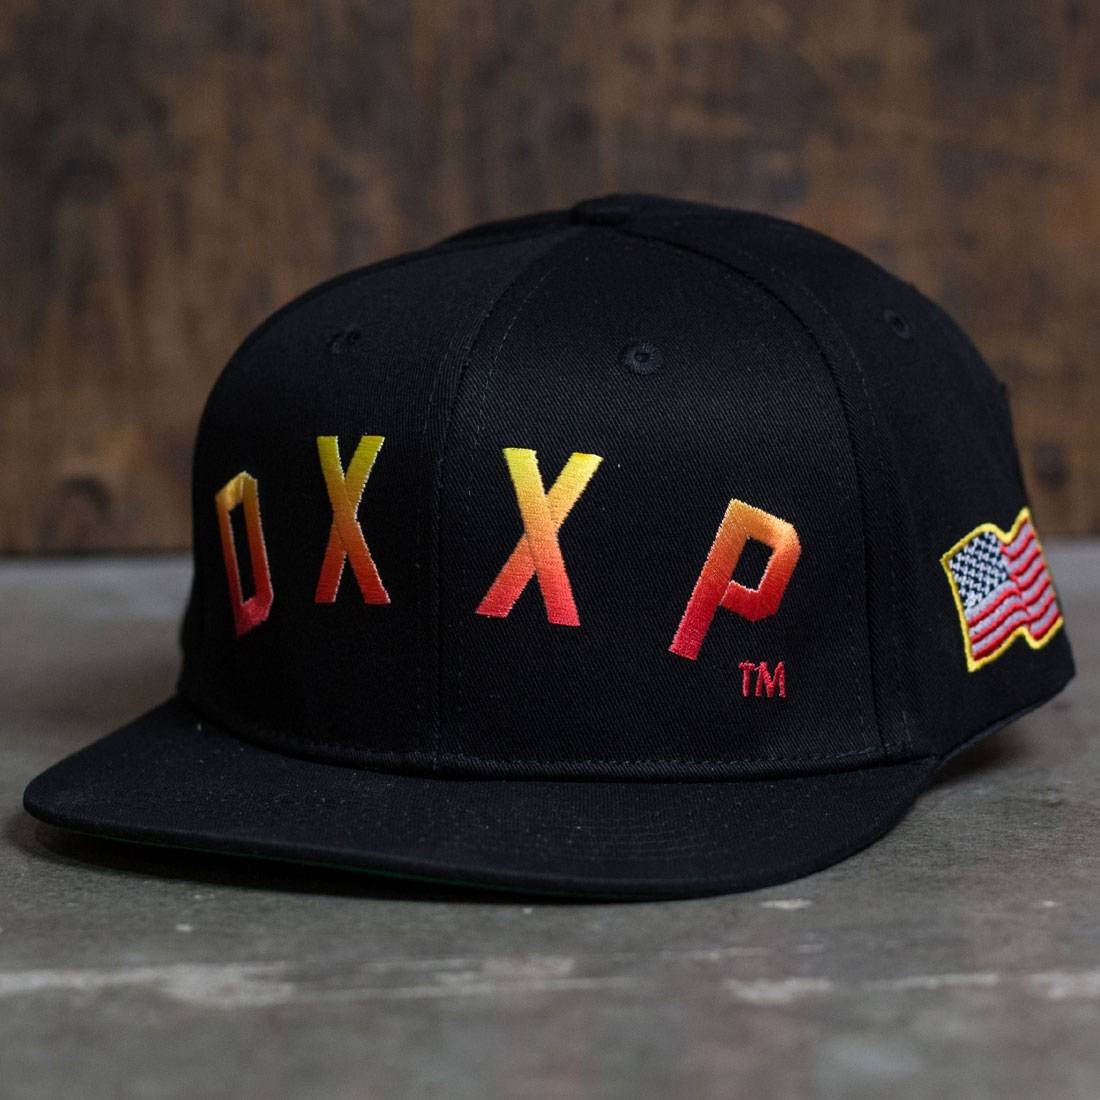 10 Deep Dxxp Snapback Cap (black)